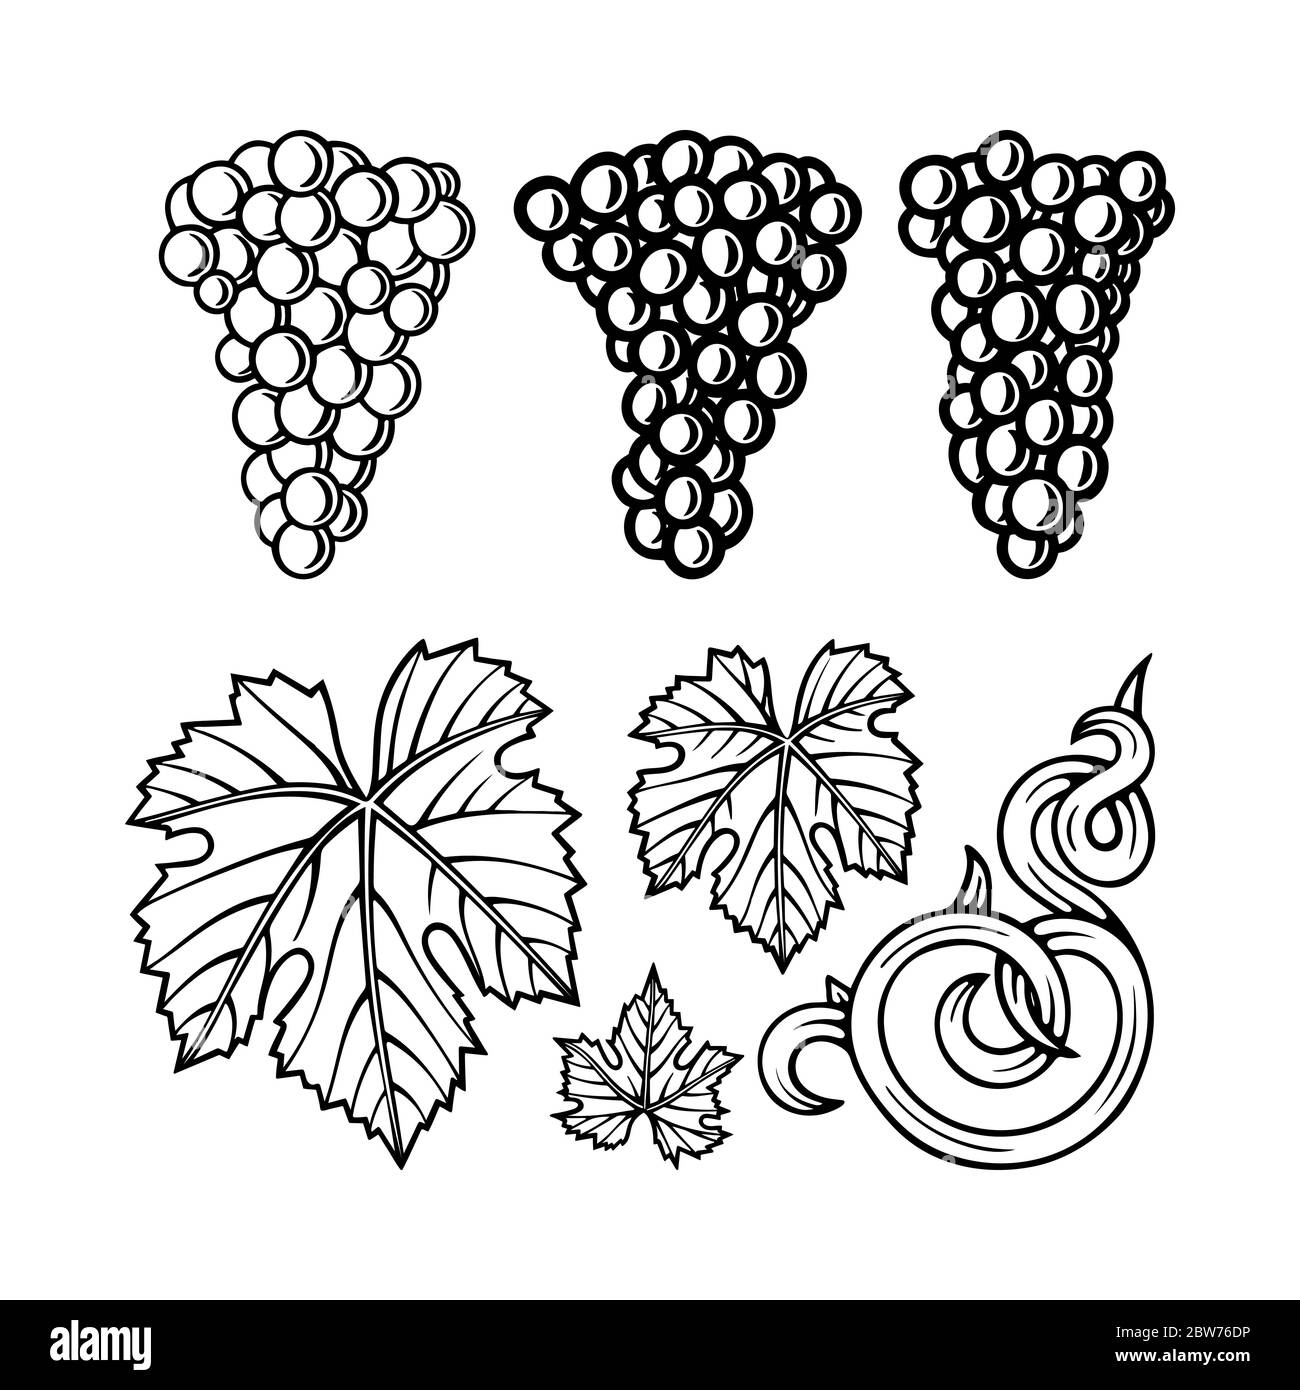 Costruttore ornamentale di uva e vite. Illustrazione dello stile di  incisione del grappolo di uva disegnato a mano. Disegno di grappolo di uva,  vite e foglia. Parte del set Immagine e Vettoriale -